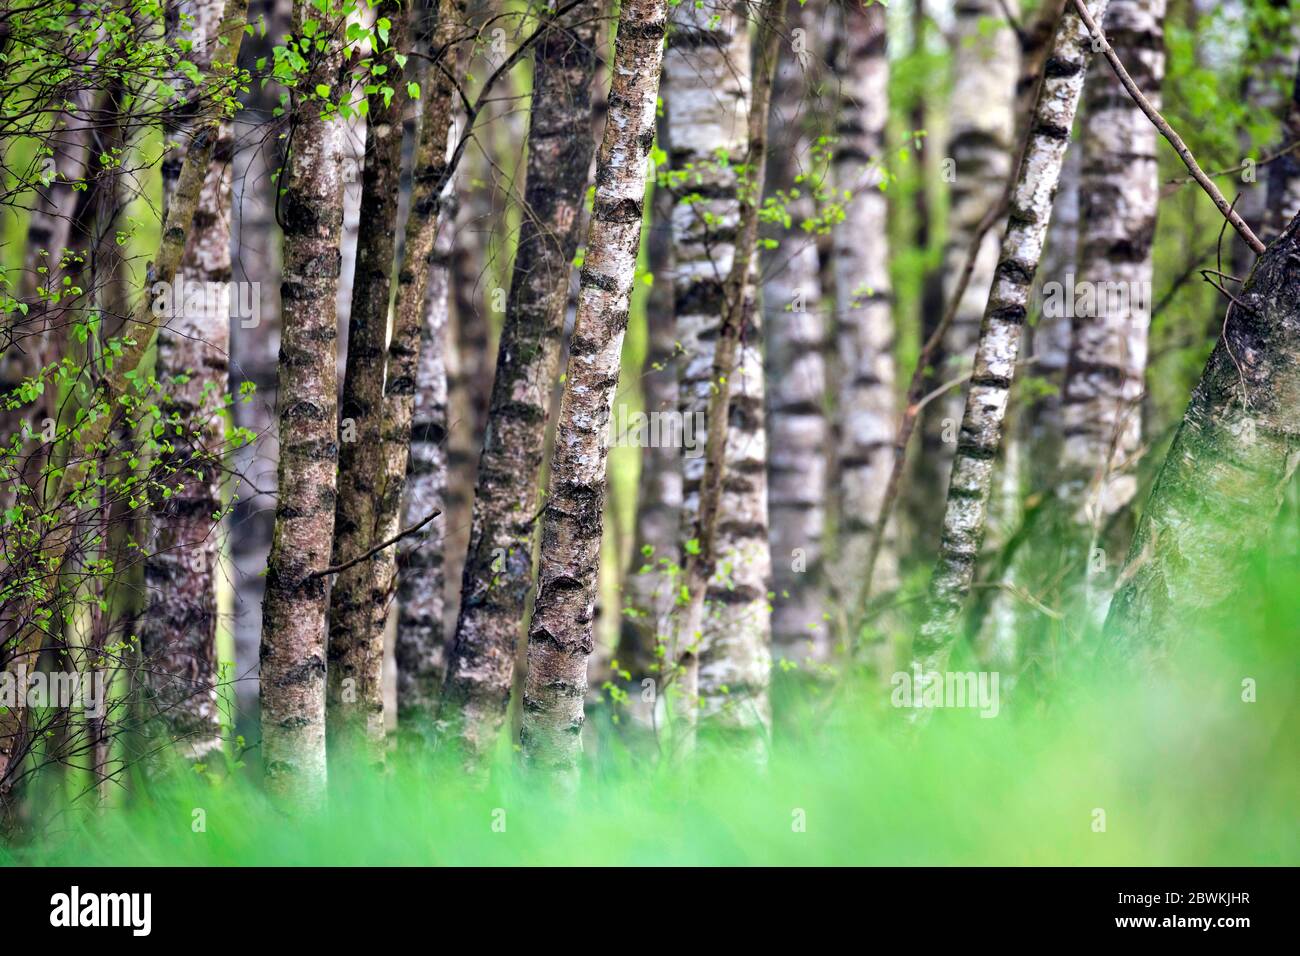 common birch, silver birch, European white birch, white birch (Betula pendula, Betula alba), birch forest, Germany, Schleswig-Holstein Stock Photo